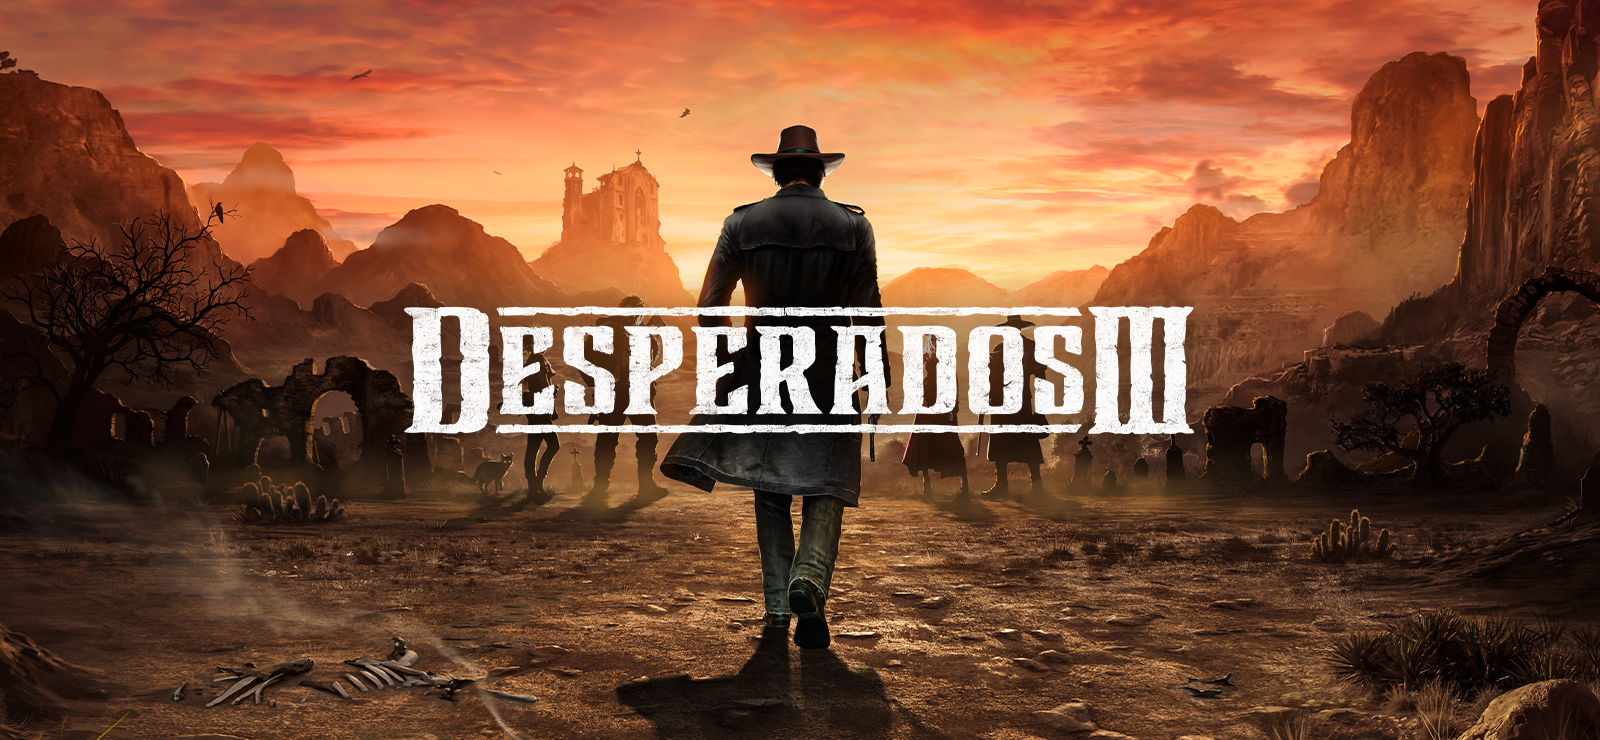 Desperados III Season Pass